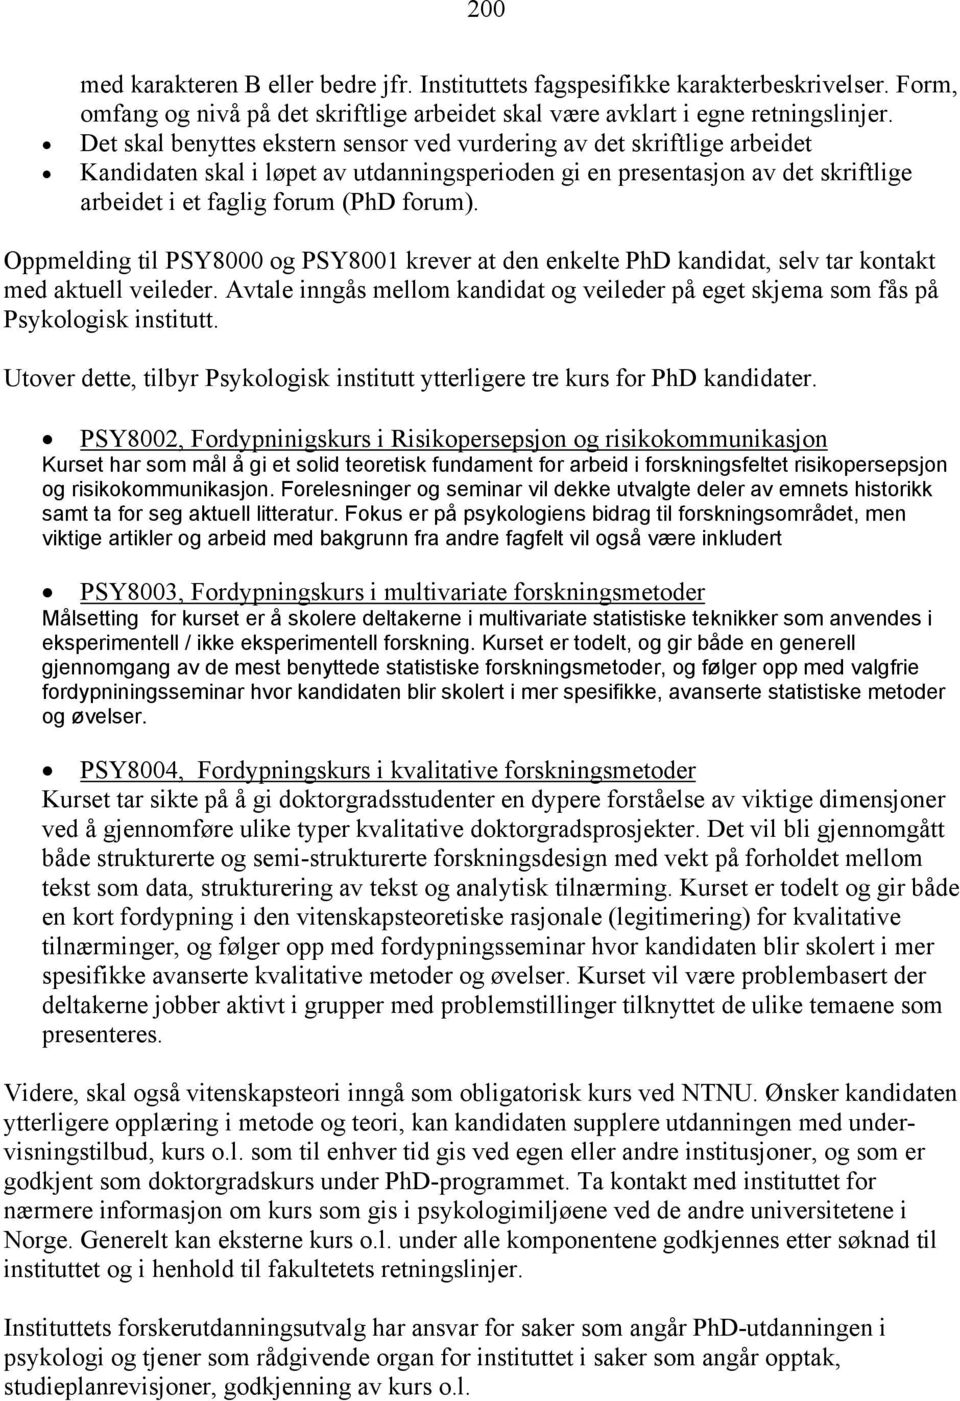 Oppmelding til PSY8000 og PSY8001 krever at den enkelte PhD kandidat, selv tar kontakt med aktuell veileder. Avtale inngås mellom kandidat og veileder på eget skjema som fås på Psykologisk institutt.